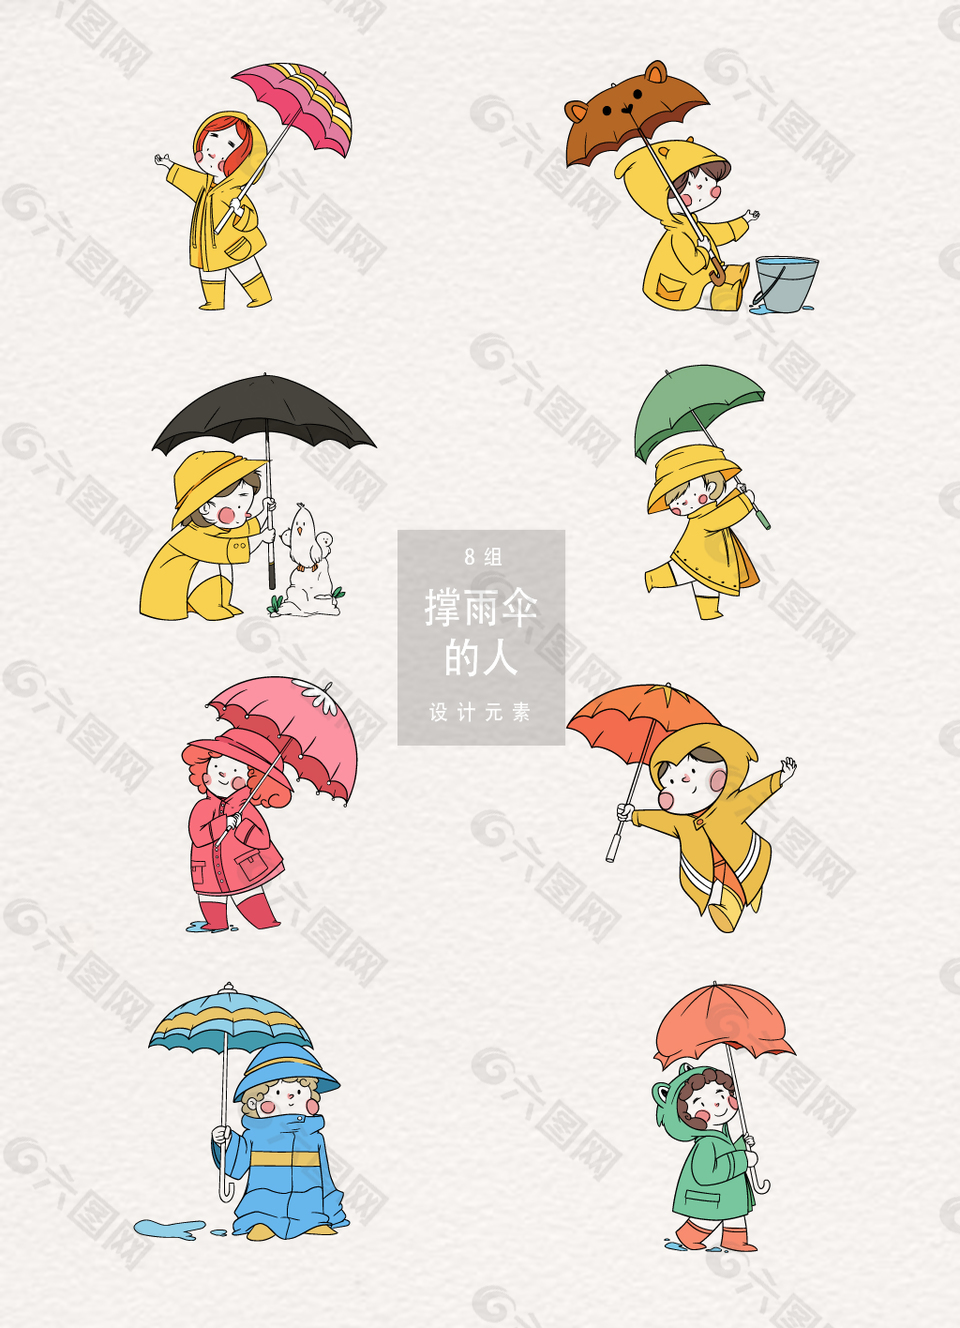 撑雨伞的人插画